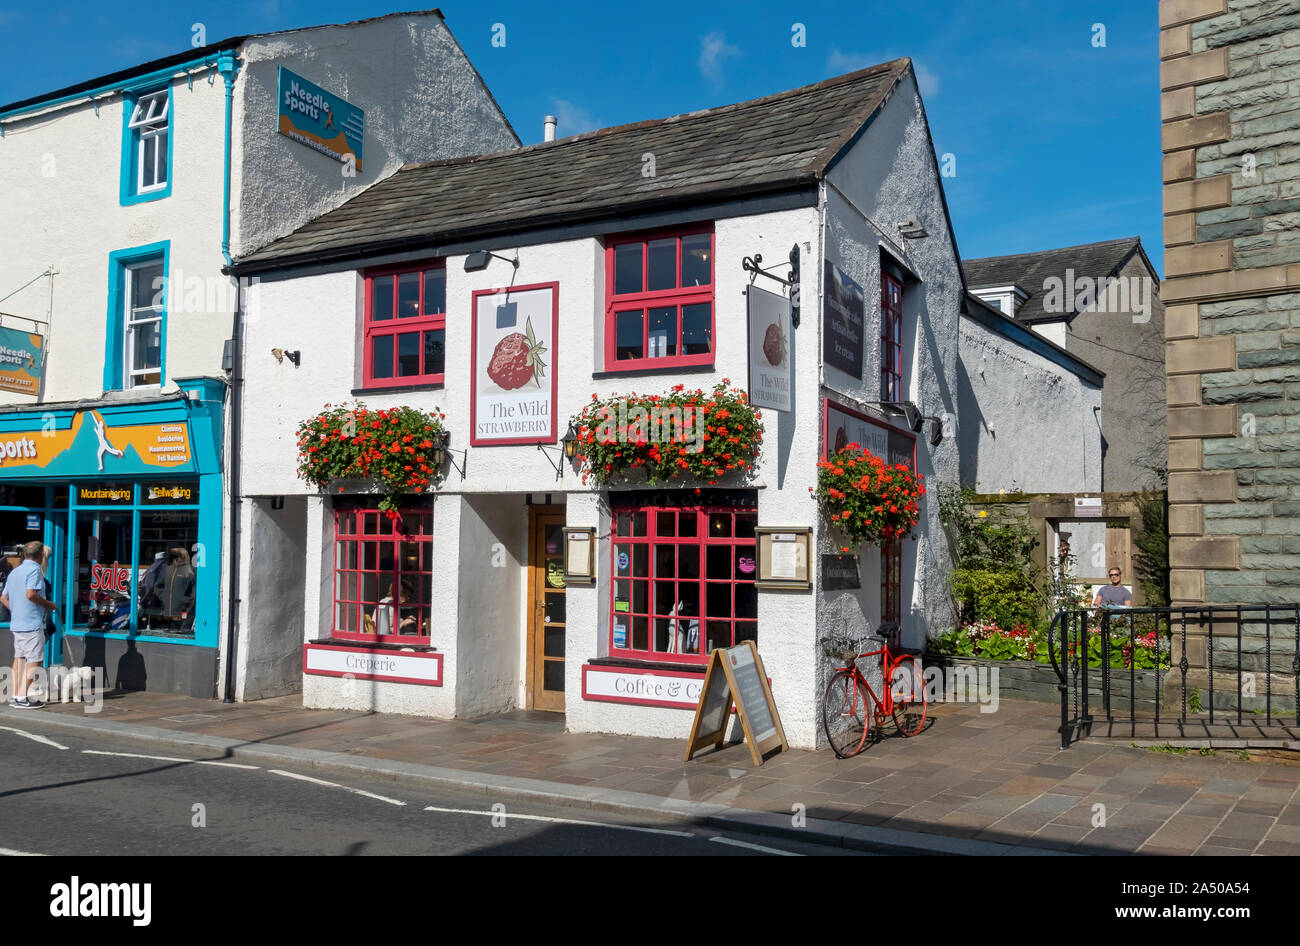 The Wild Strawberry Coffee Shop Café im Sommer Keswick Cumbria England UK Vereinigtes Königreich GB Großbritannien Stockfoto